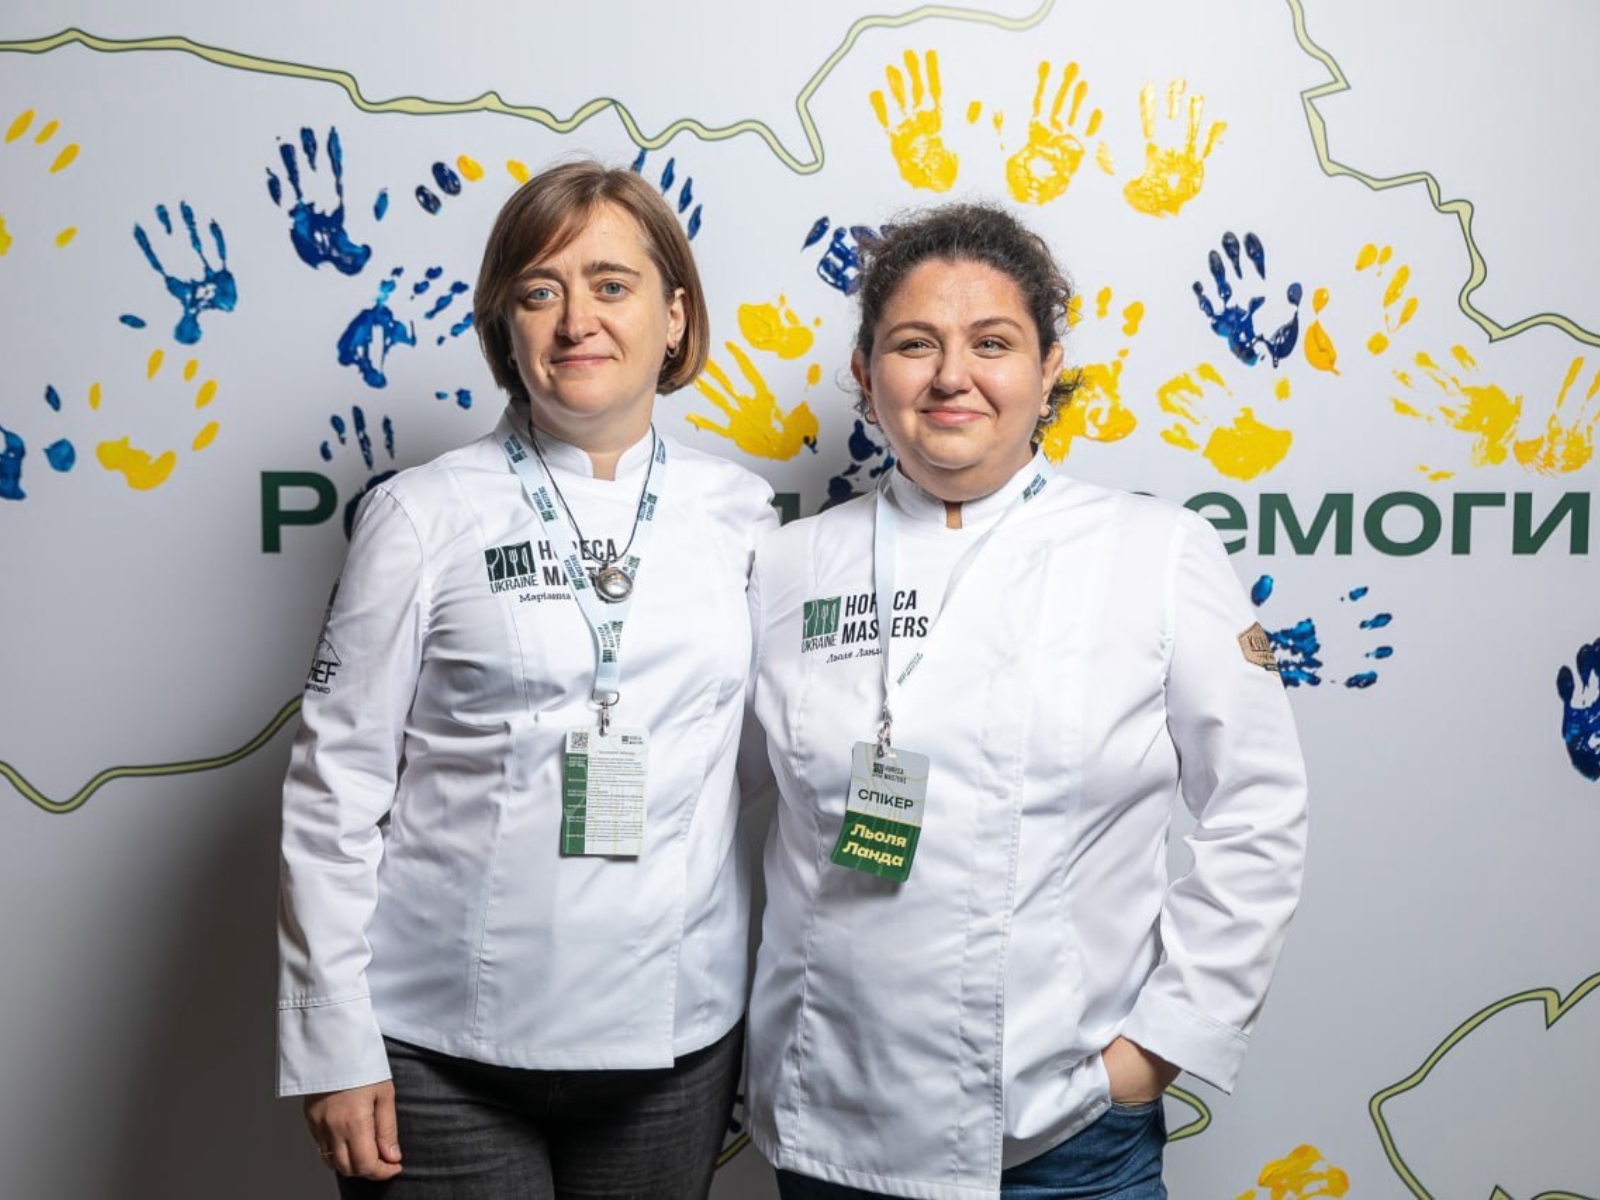 Dwie kobiety - Marianna Dushar i Lola Landa stoją obok siebie. W tle zarys terytorium Ukrainy, na którym odbite są dłonie w niebiesko-żółtych kolorach.